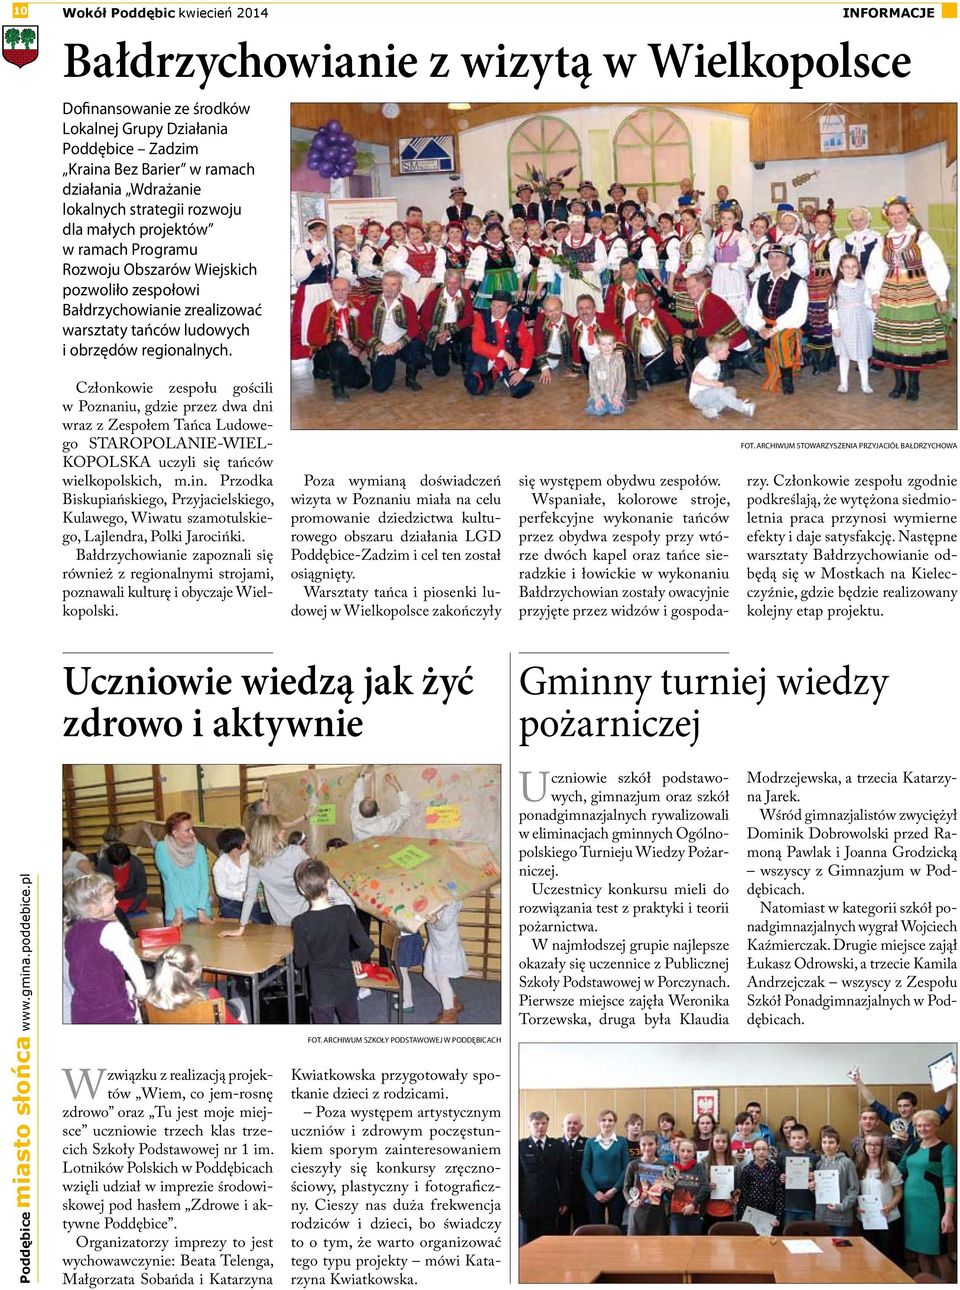 Członkowie zespołu gościli w Poznaniu, gdzie przez dwa dni wraz z Zespołem Tańca Ludowego STAROPOLANIE-WIEL- KOPOLSKA uczyli się tańców wielkopolskich, m.in.